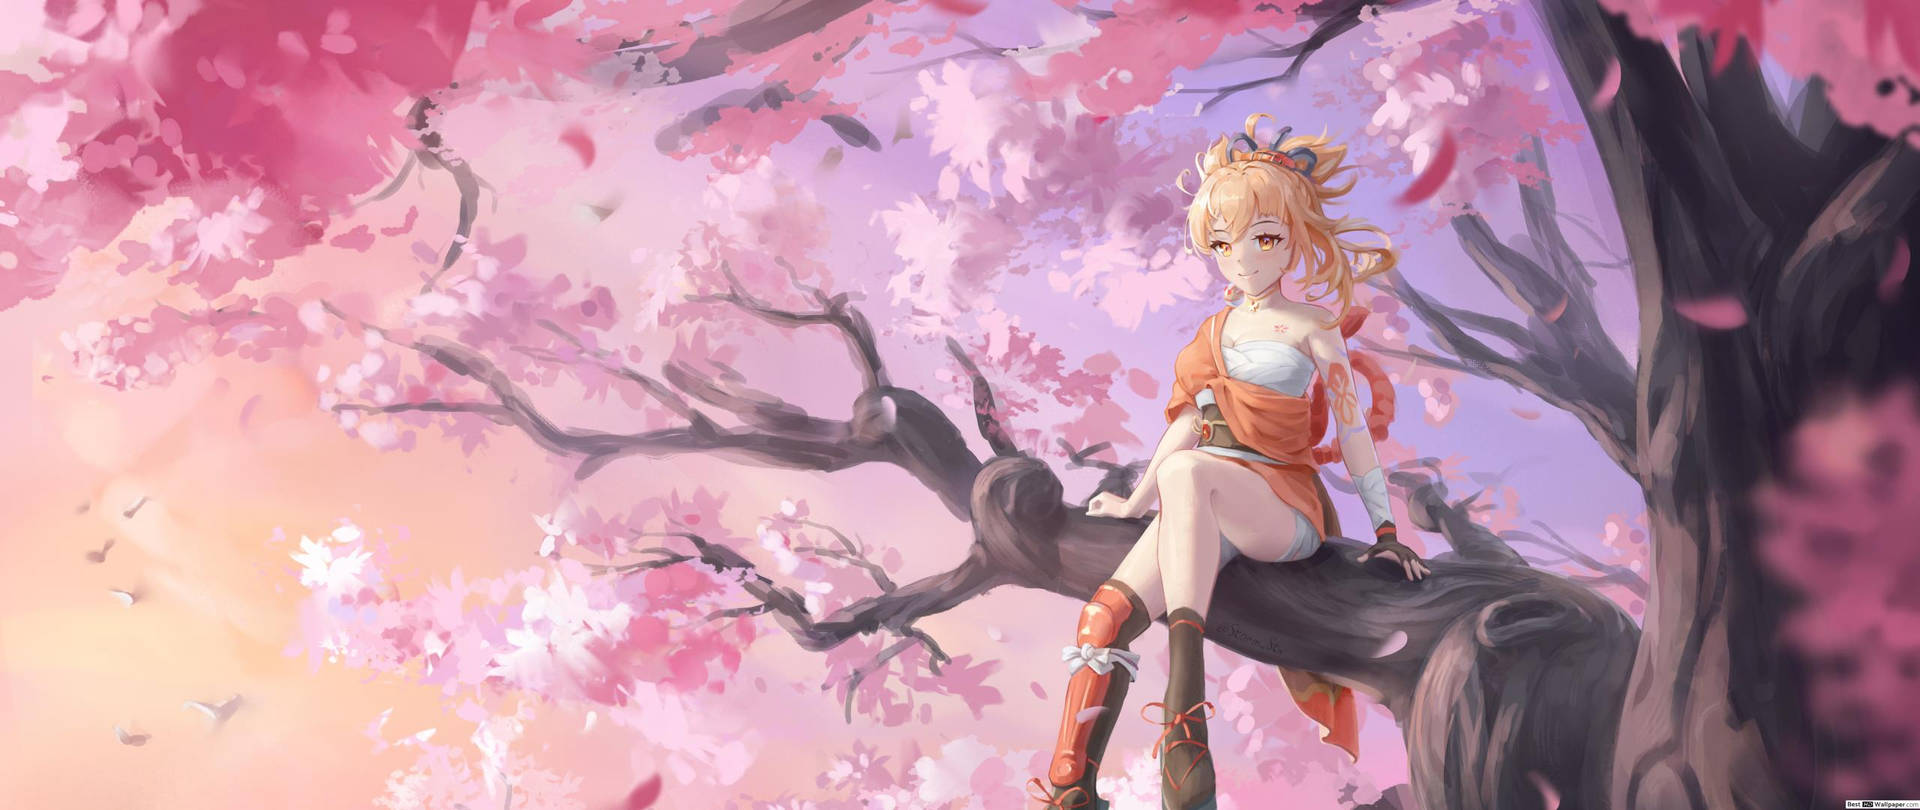 Cool Anime Girl On Cherry Blossom Wallpaper